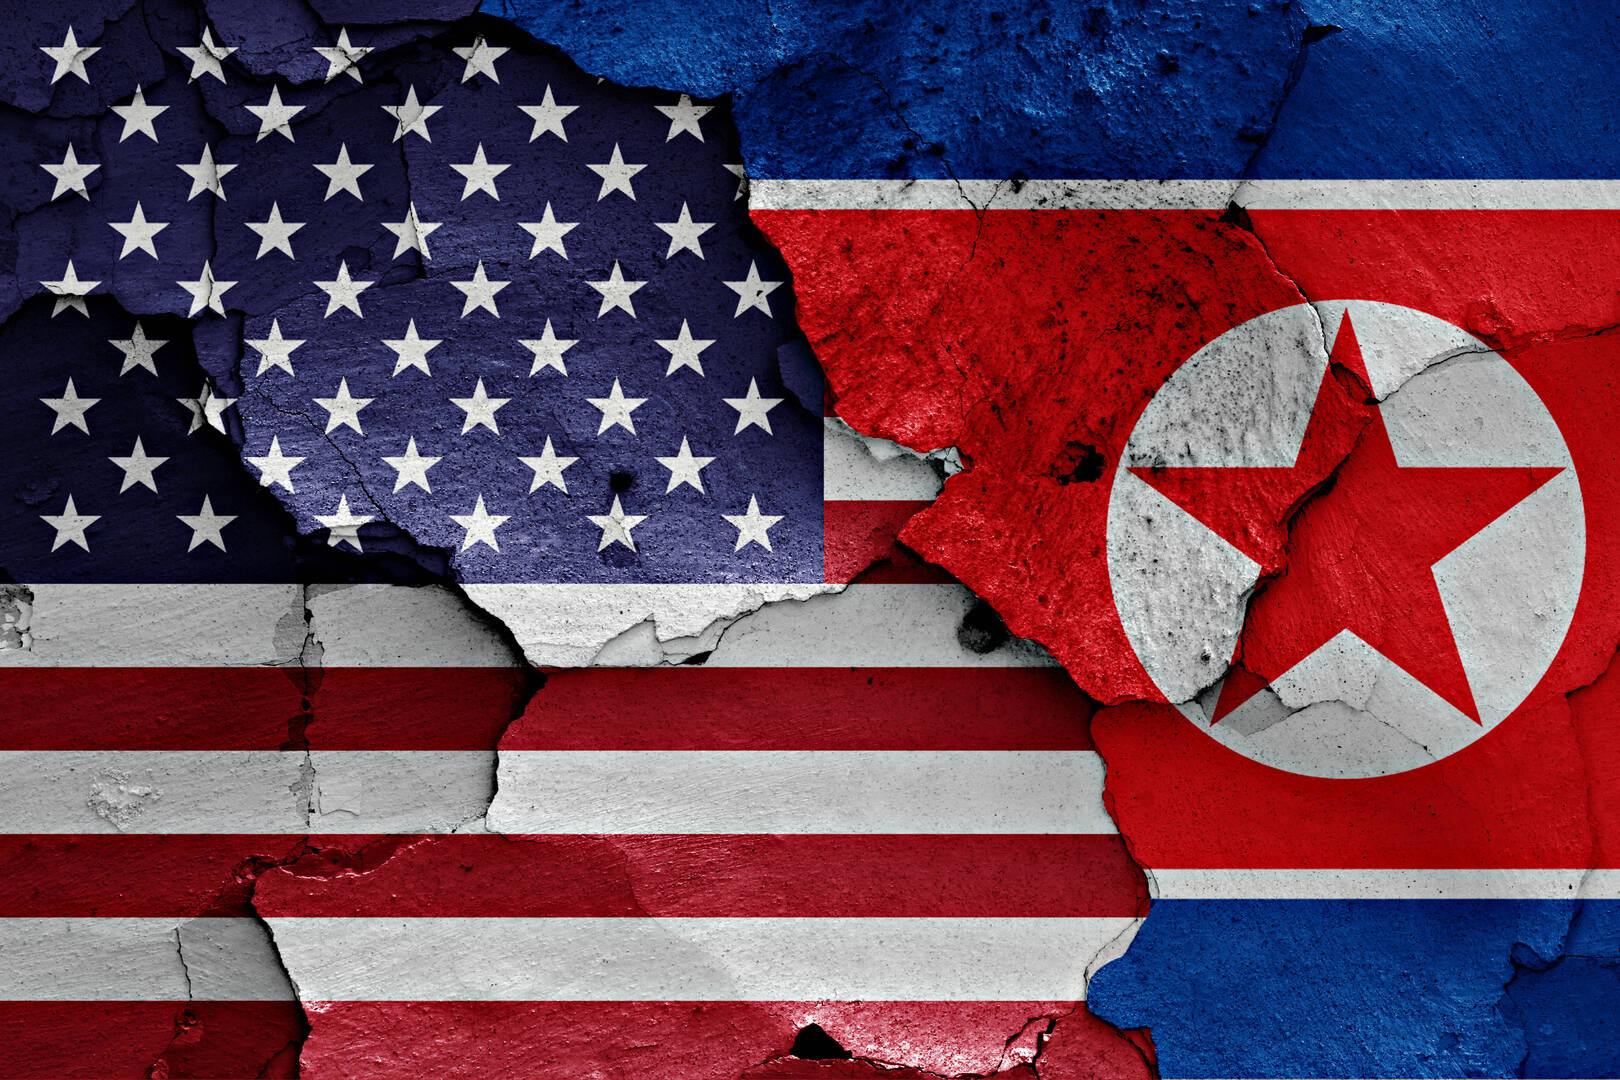 واشنطن توسع قائمة العقوبات ضد كوريا الشمالية